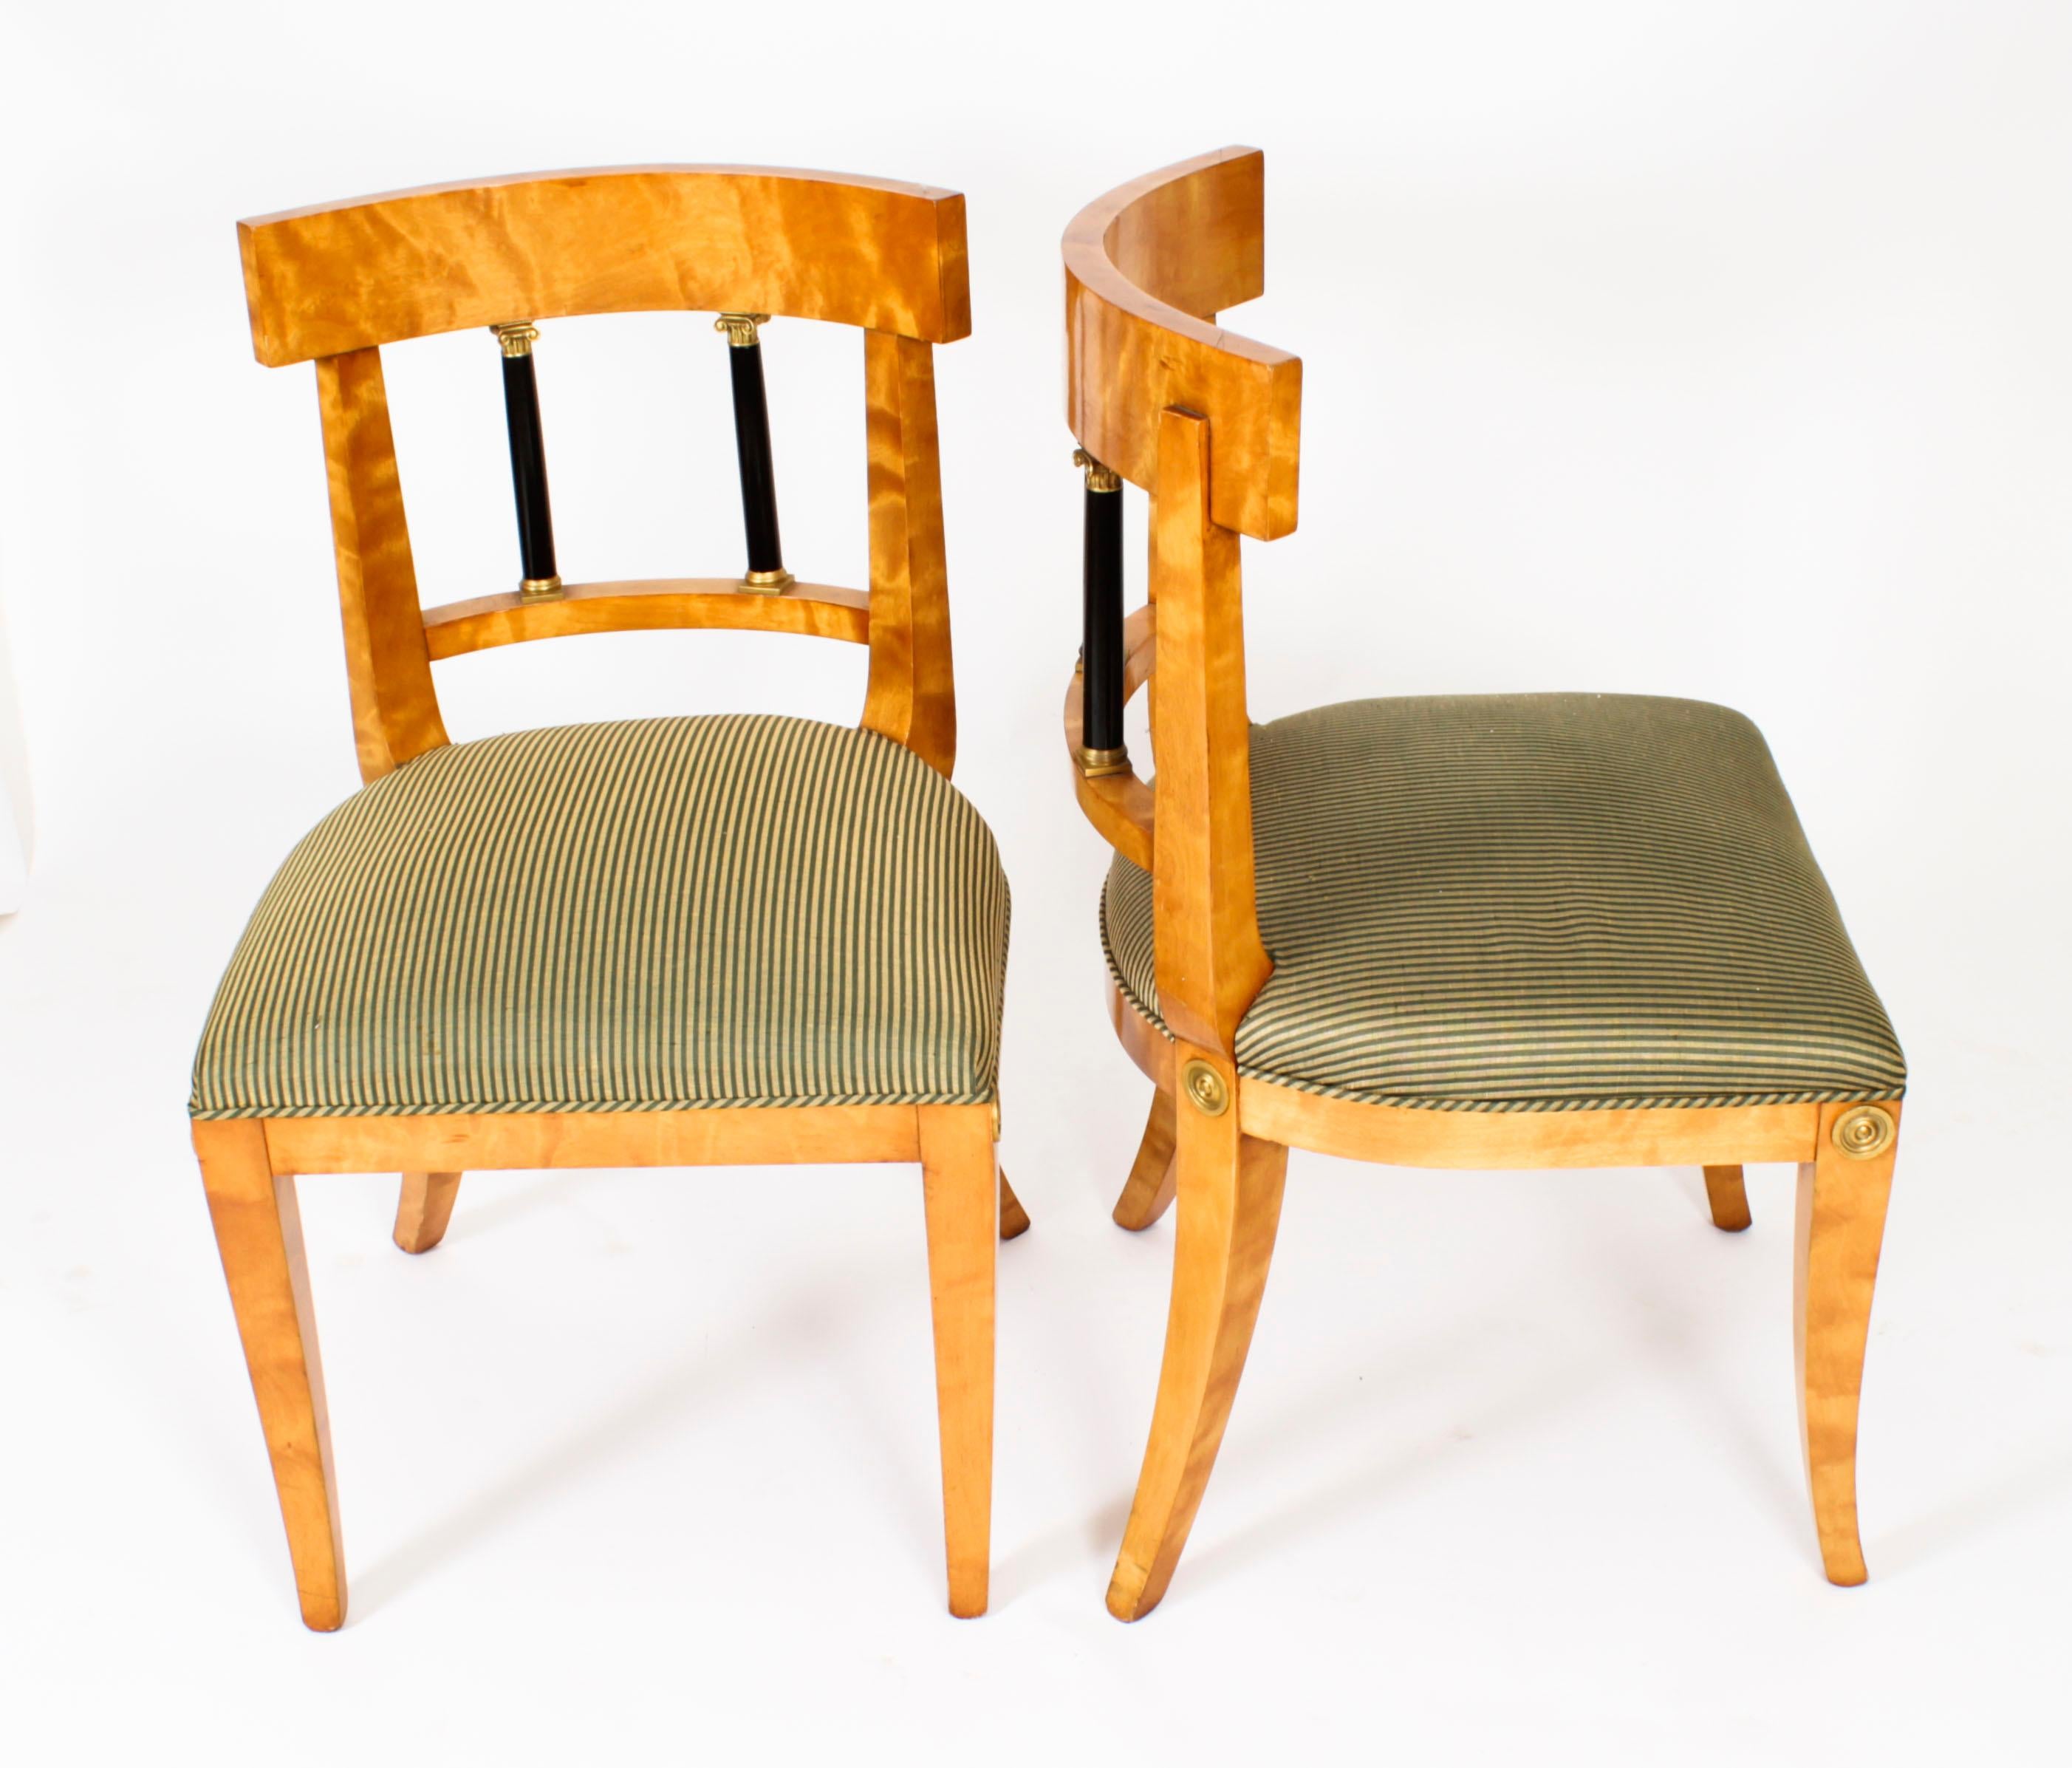 Il s'agit d'un fabuleux et rare ensemble ancien de douze chaises de salle à manger Biedermeier suédoises en bouleau, montées en bronze doré et ébénisées, datant de 1880.

Les chaises présentent des dossiers incurvés avec des éclisses de colonnes